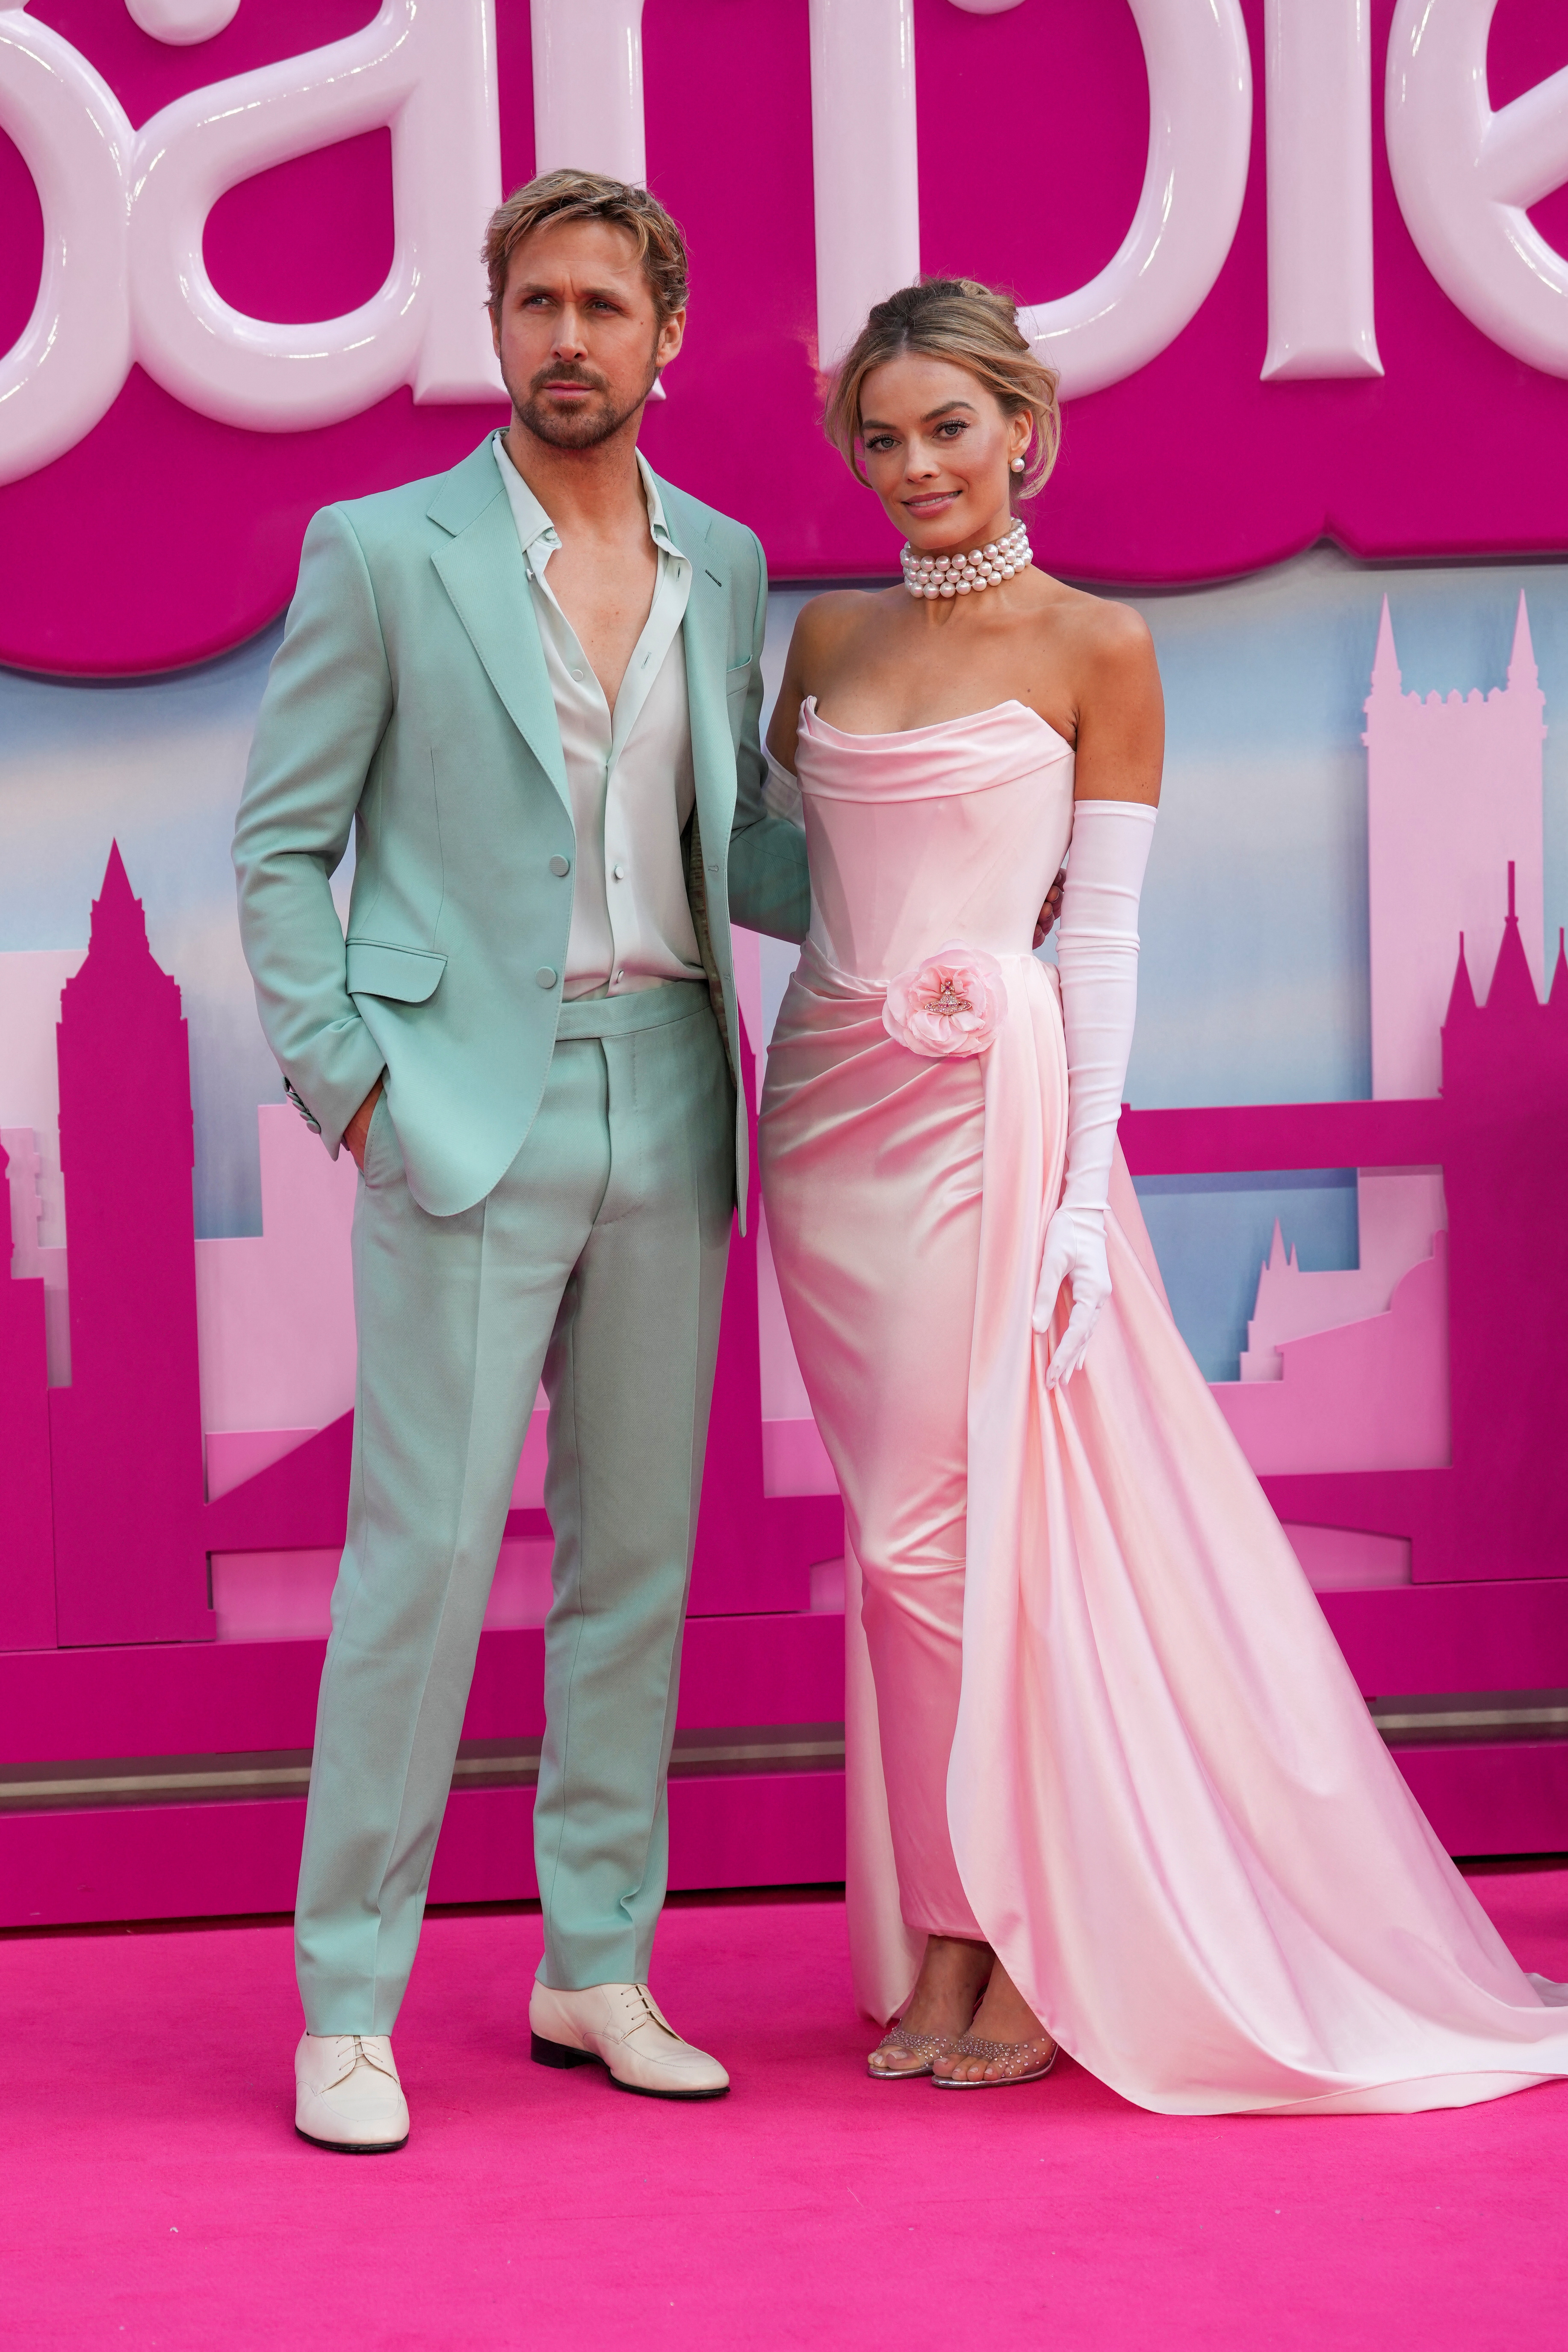 La alfombra rosa en el estreno europeo de 'Barbie' en el centro de Londres